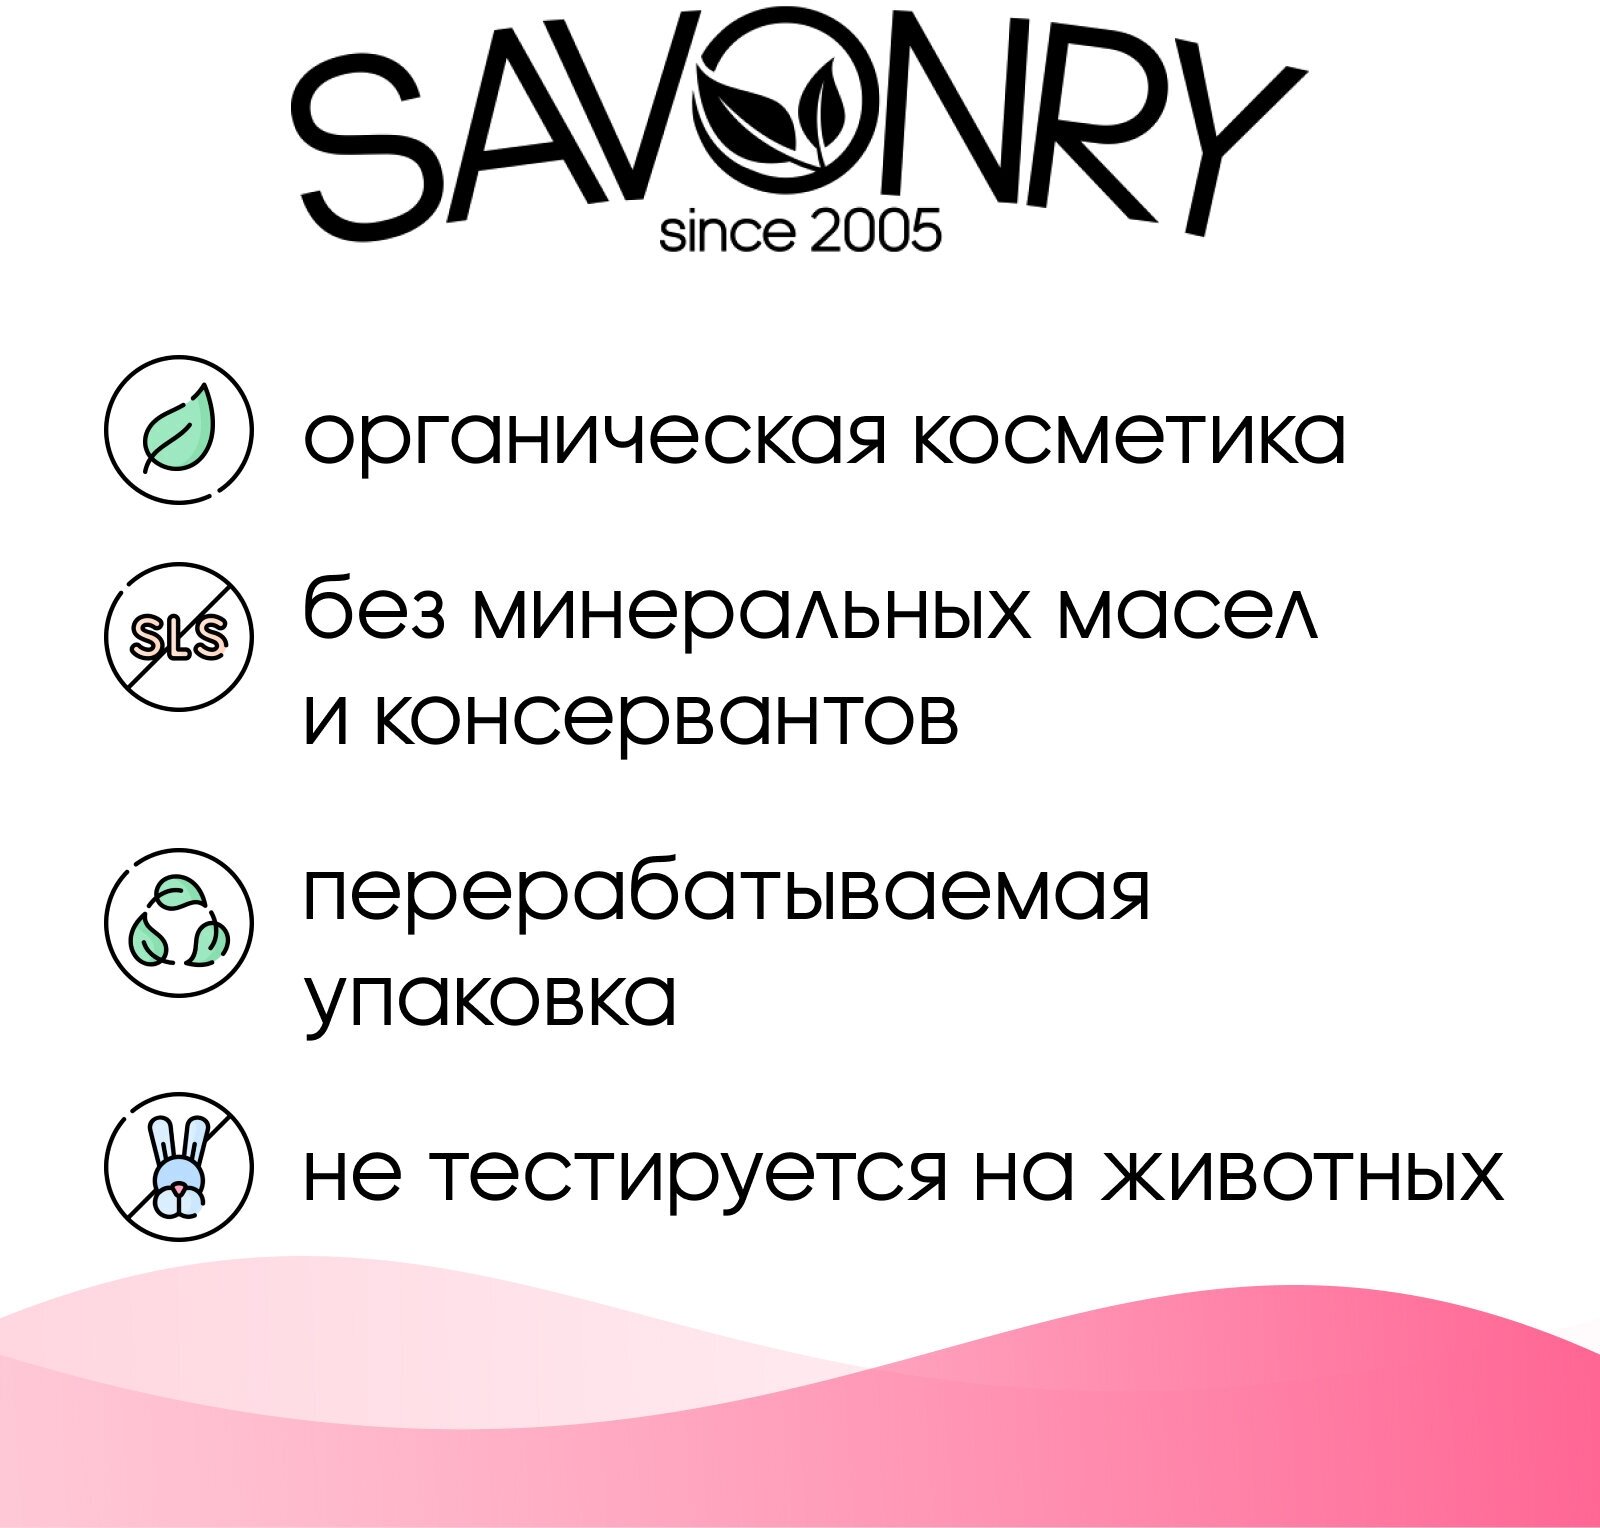 Соляной скраб для тела SAVONRY HOT COUTURE (парфюмированный), 300 г